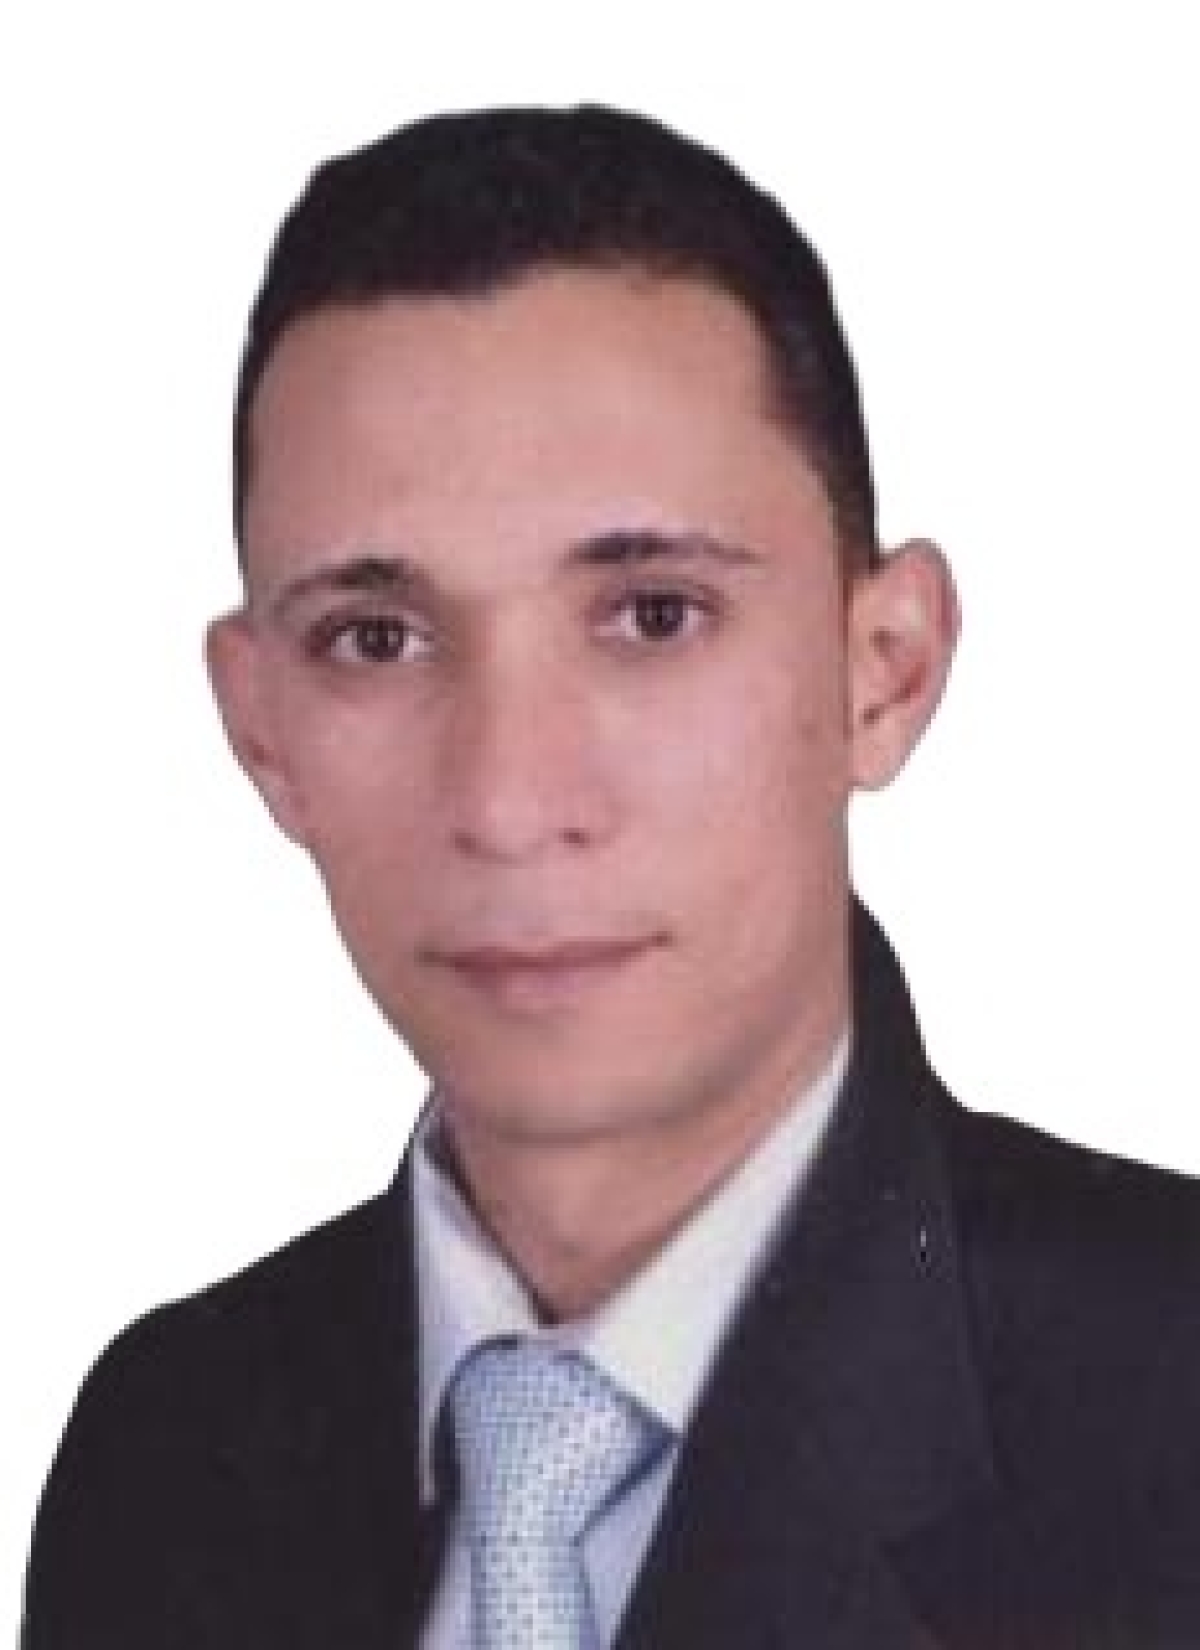 أ.د/ احمد يوسف عبد الرحمن - مديراً تنفيذياً لوحدة ضمان الجودة والاعتماد